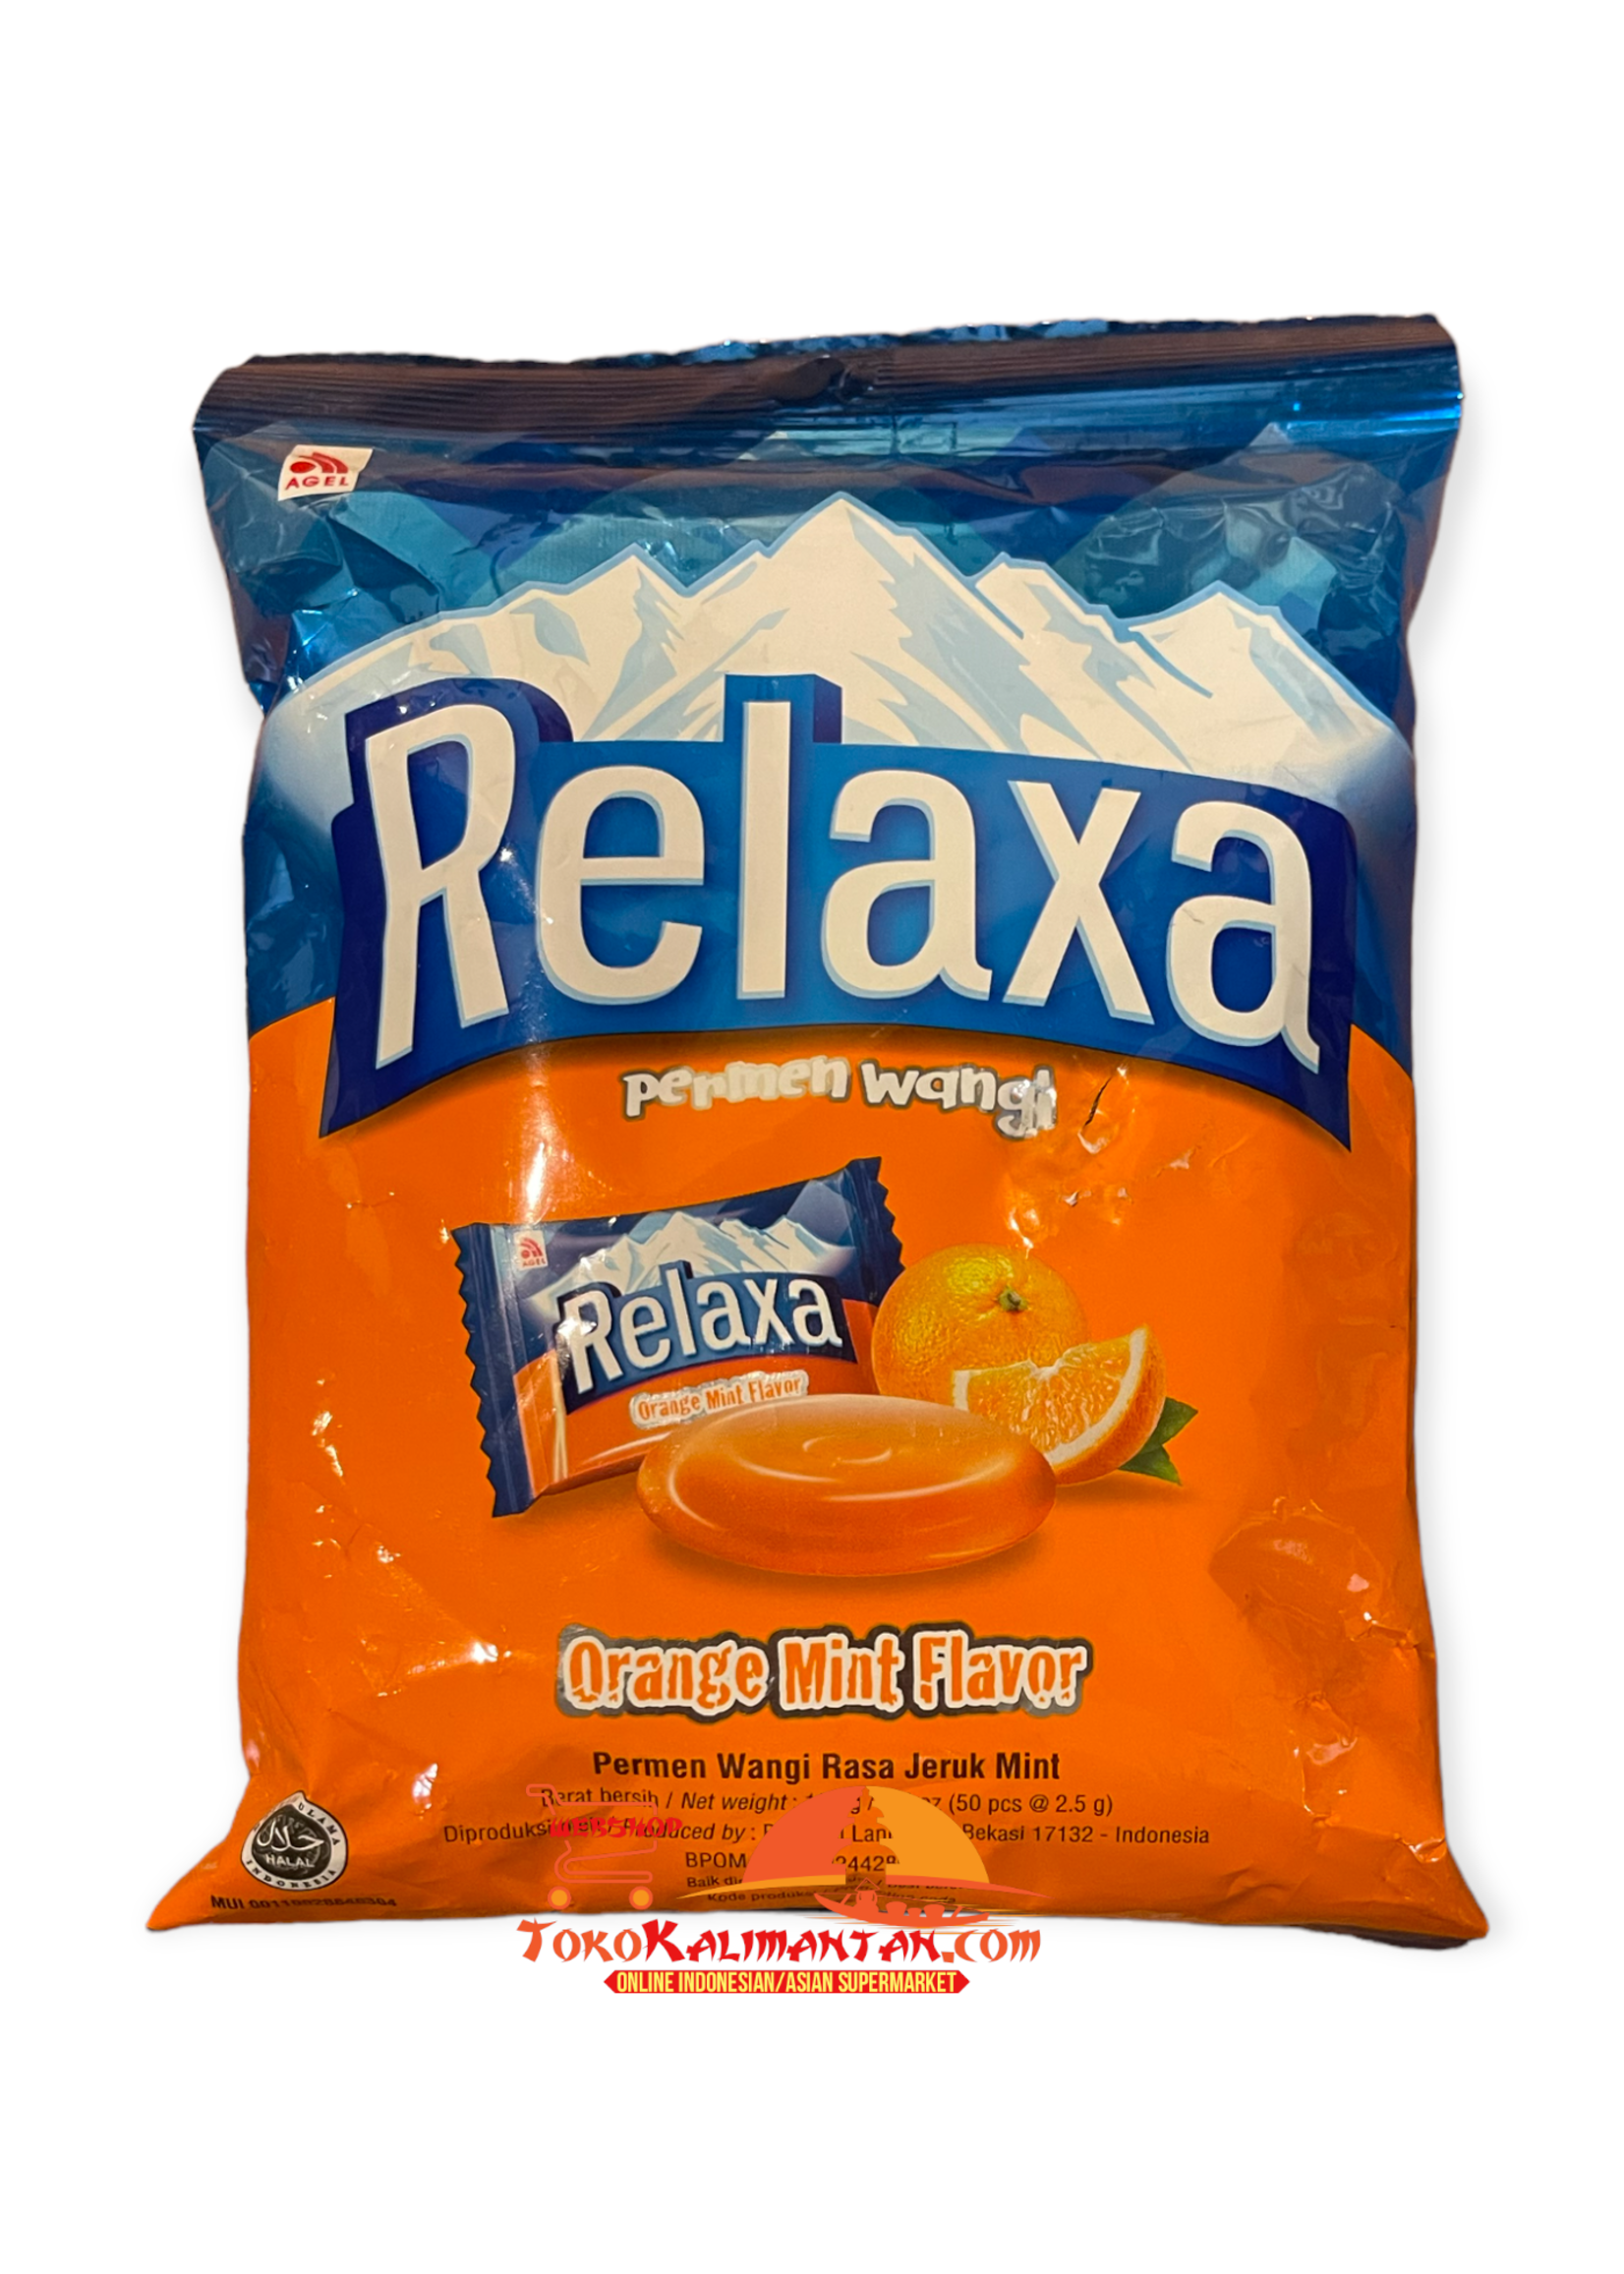 Relaxa Relaxa - permen wangi orange mint flavor